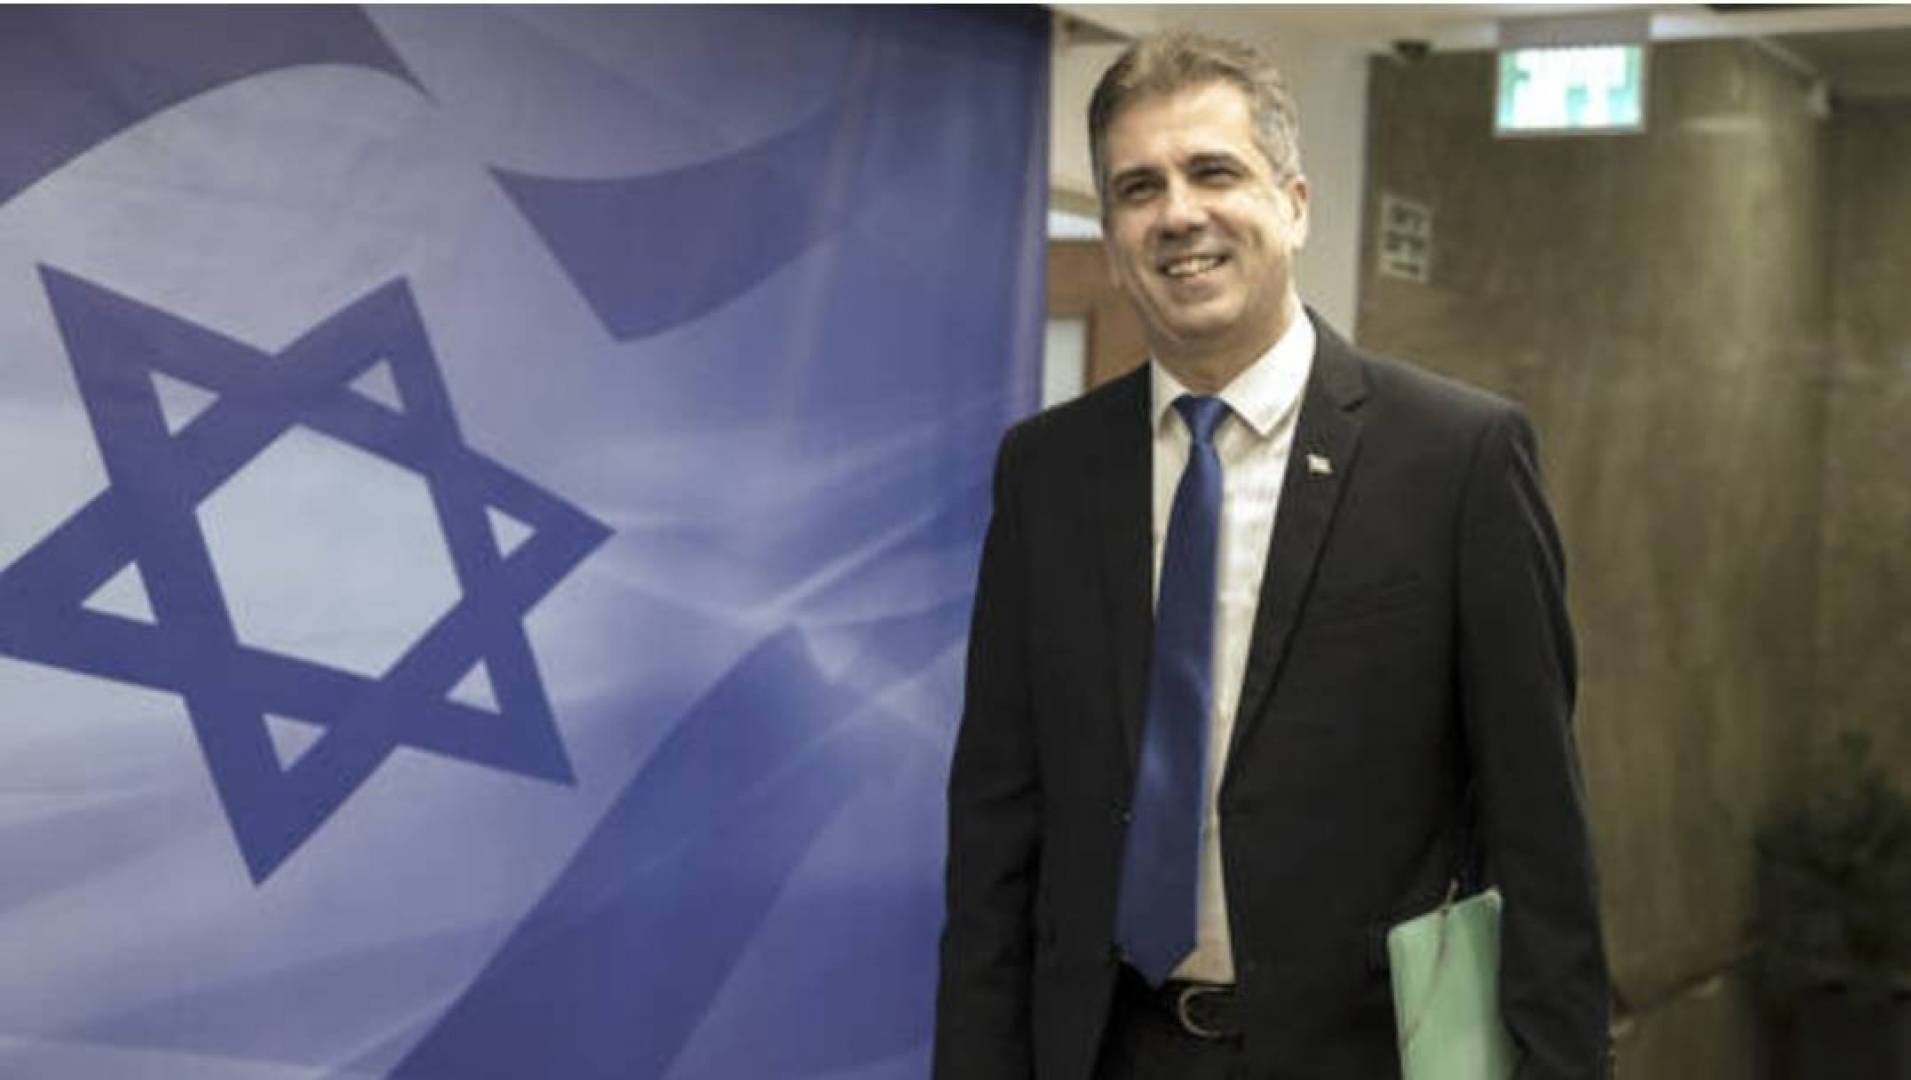 كوهين: أخبار جديدة عن تطبيع دول عربية وإسلامية علاقاتها مع إسرائيل